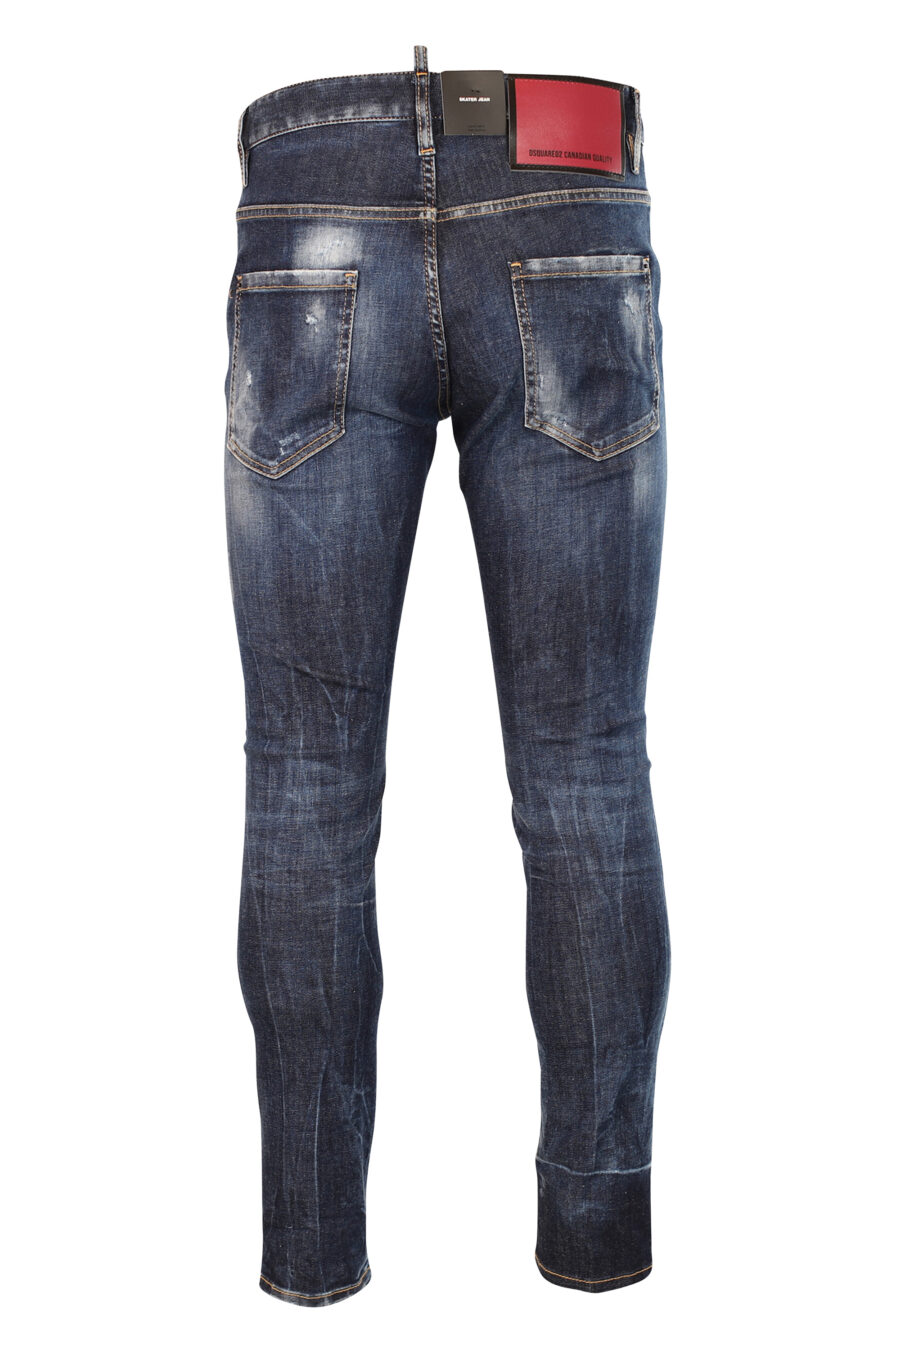 Blaue "Skater"-Jeans, halb getragen und halb zerrissen - 8052134966679 3